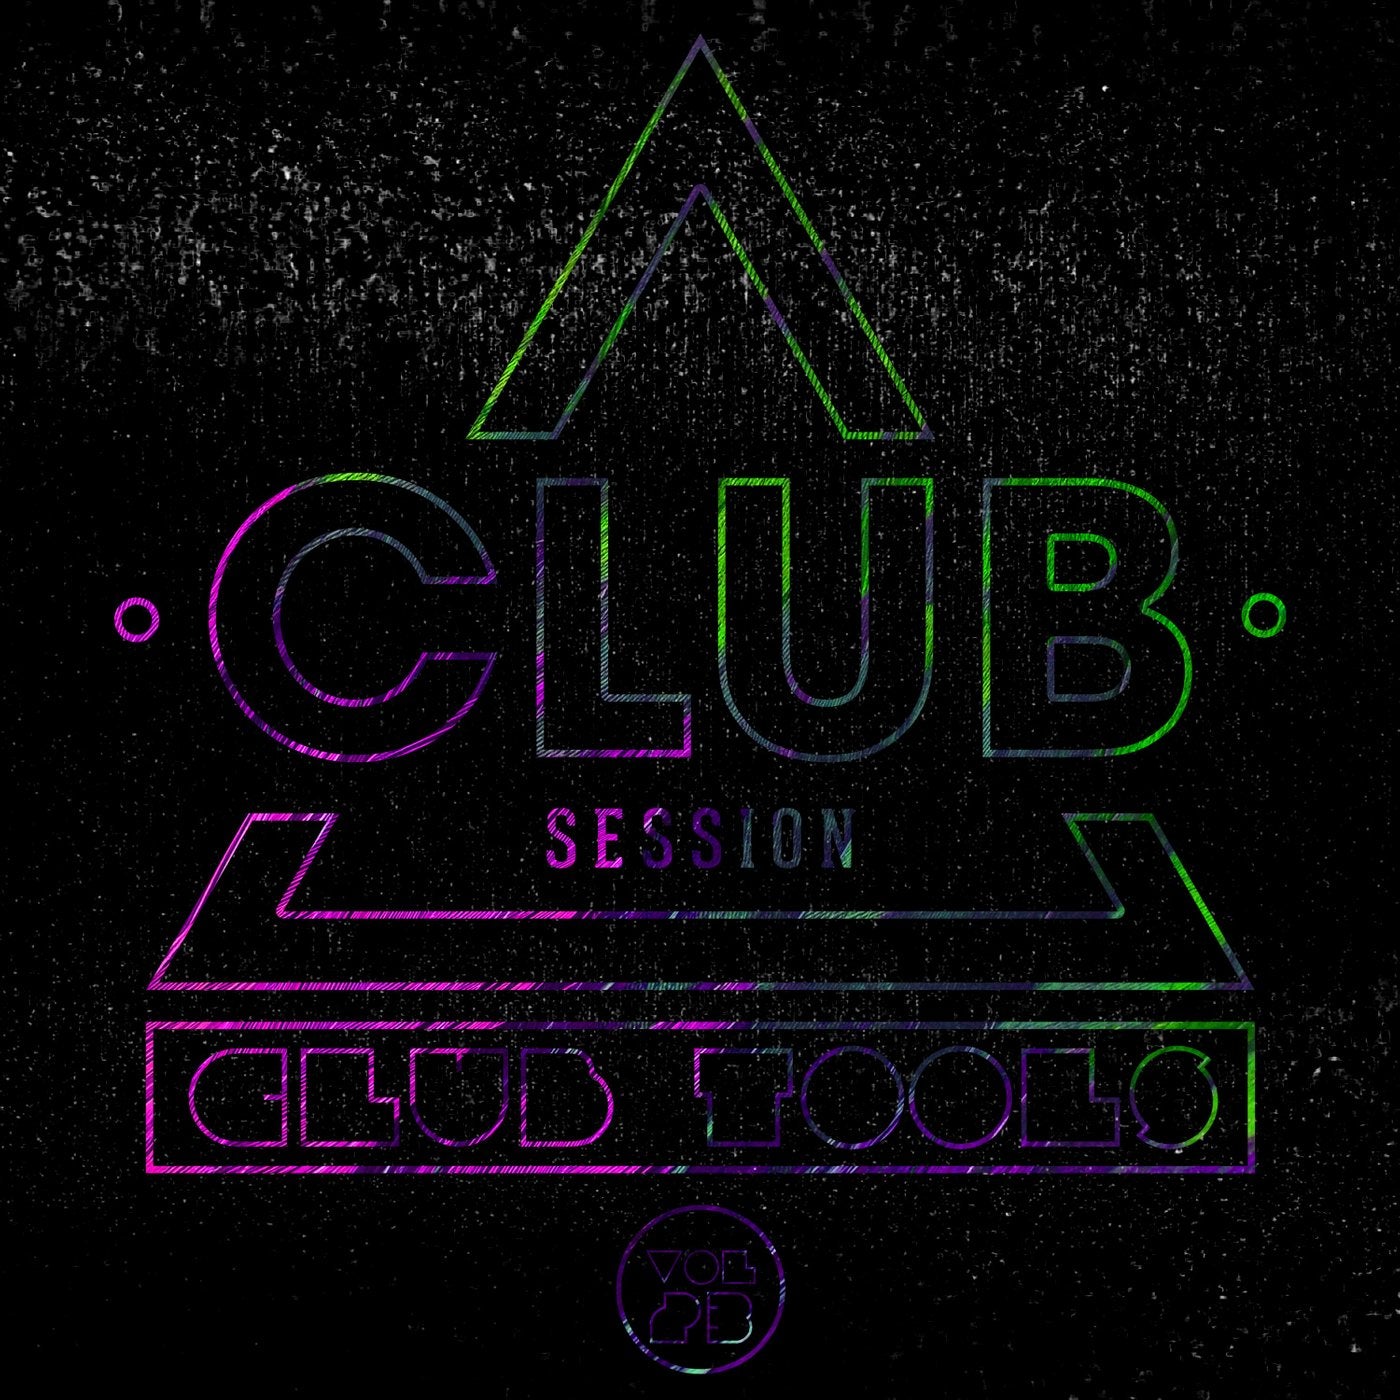 Club Session pres. Club Tools Vol. 23